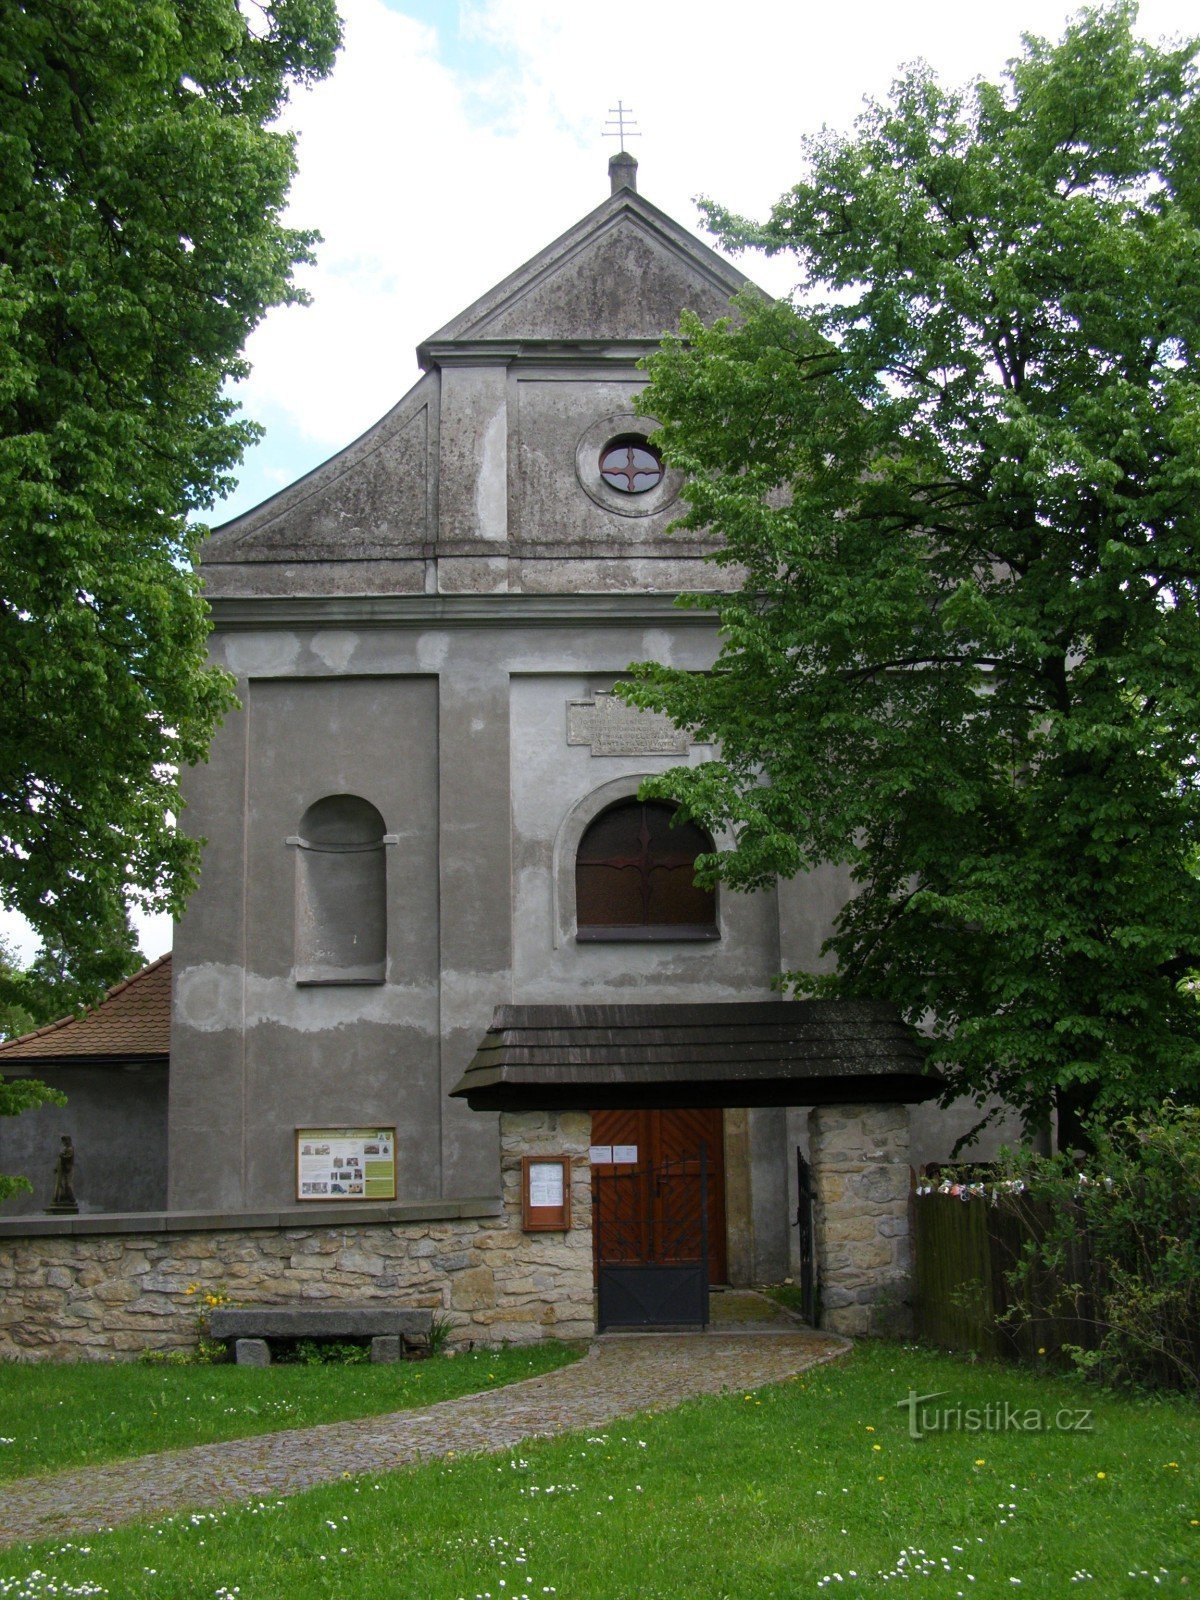 Семанин - церковь св. Варфоломей